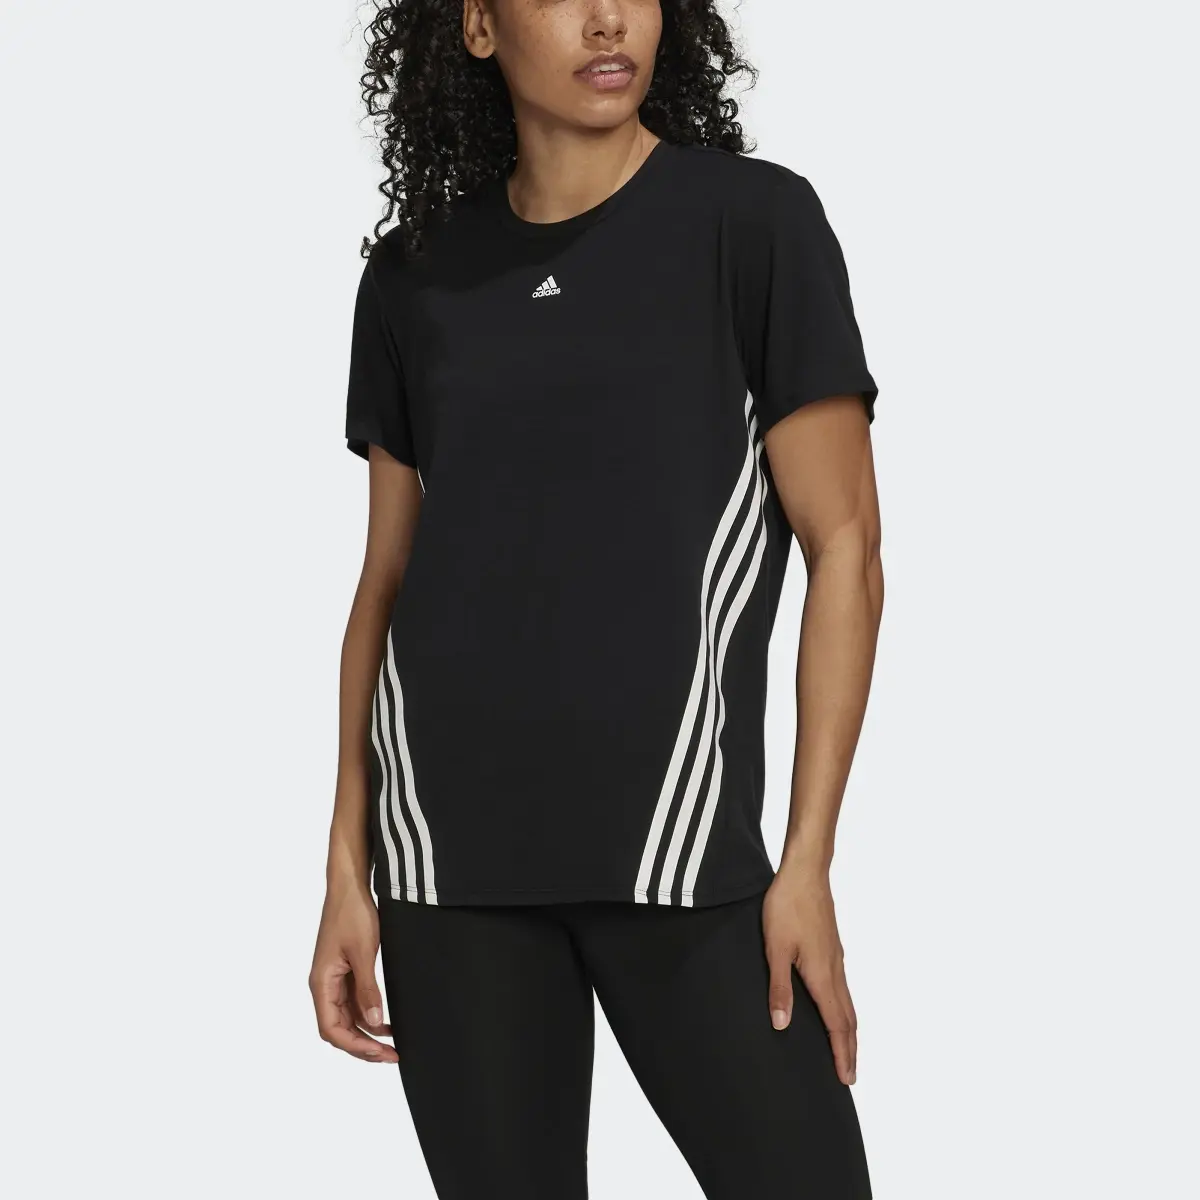 Adidas Trainicons 3-Stripes Tişört. 1